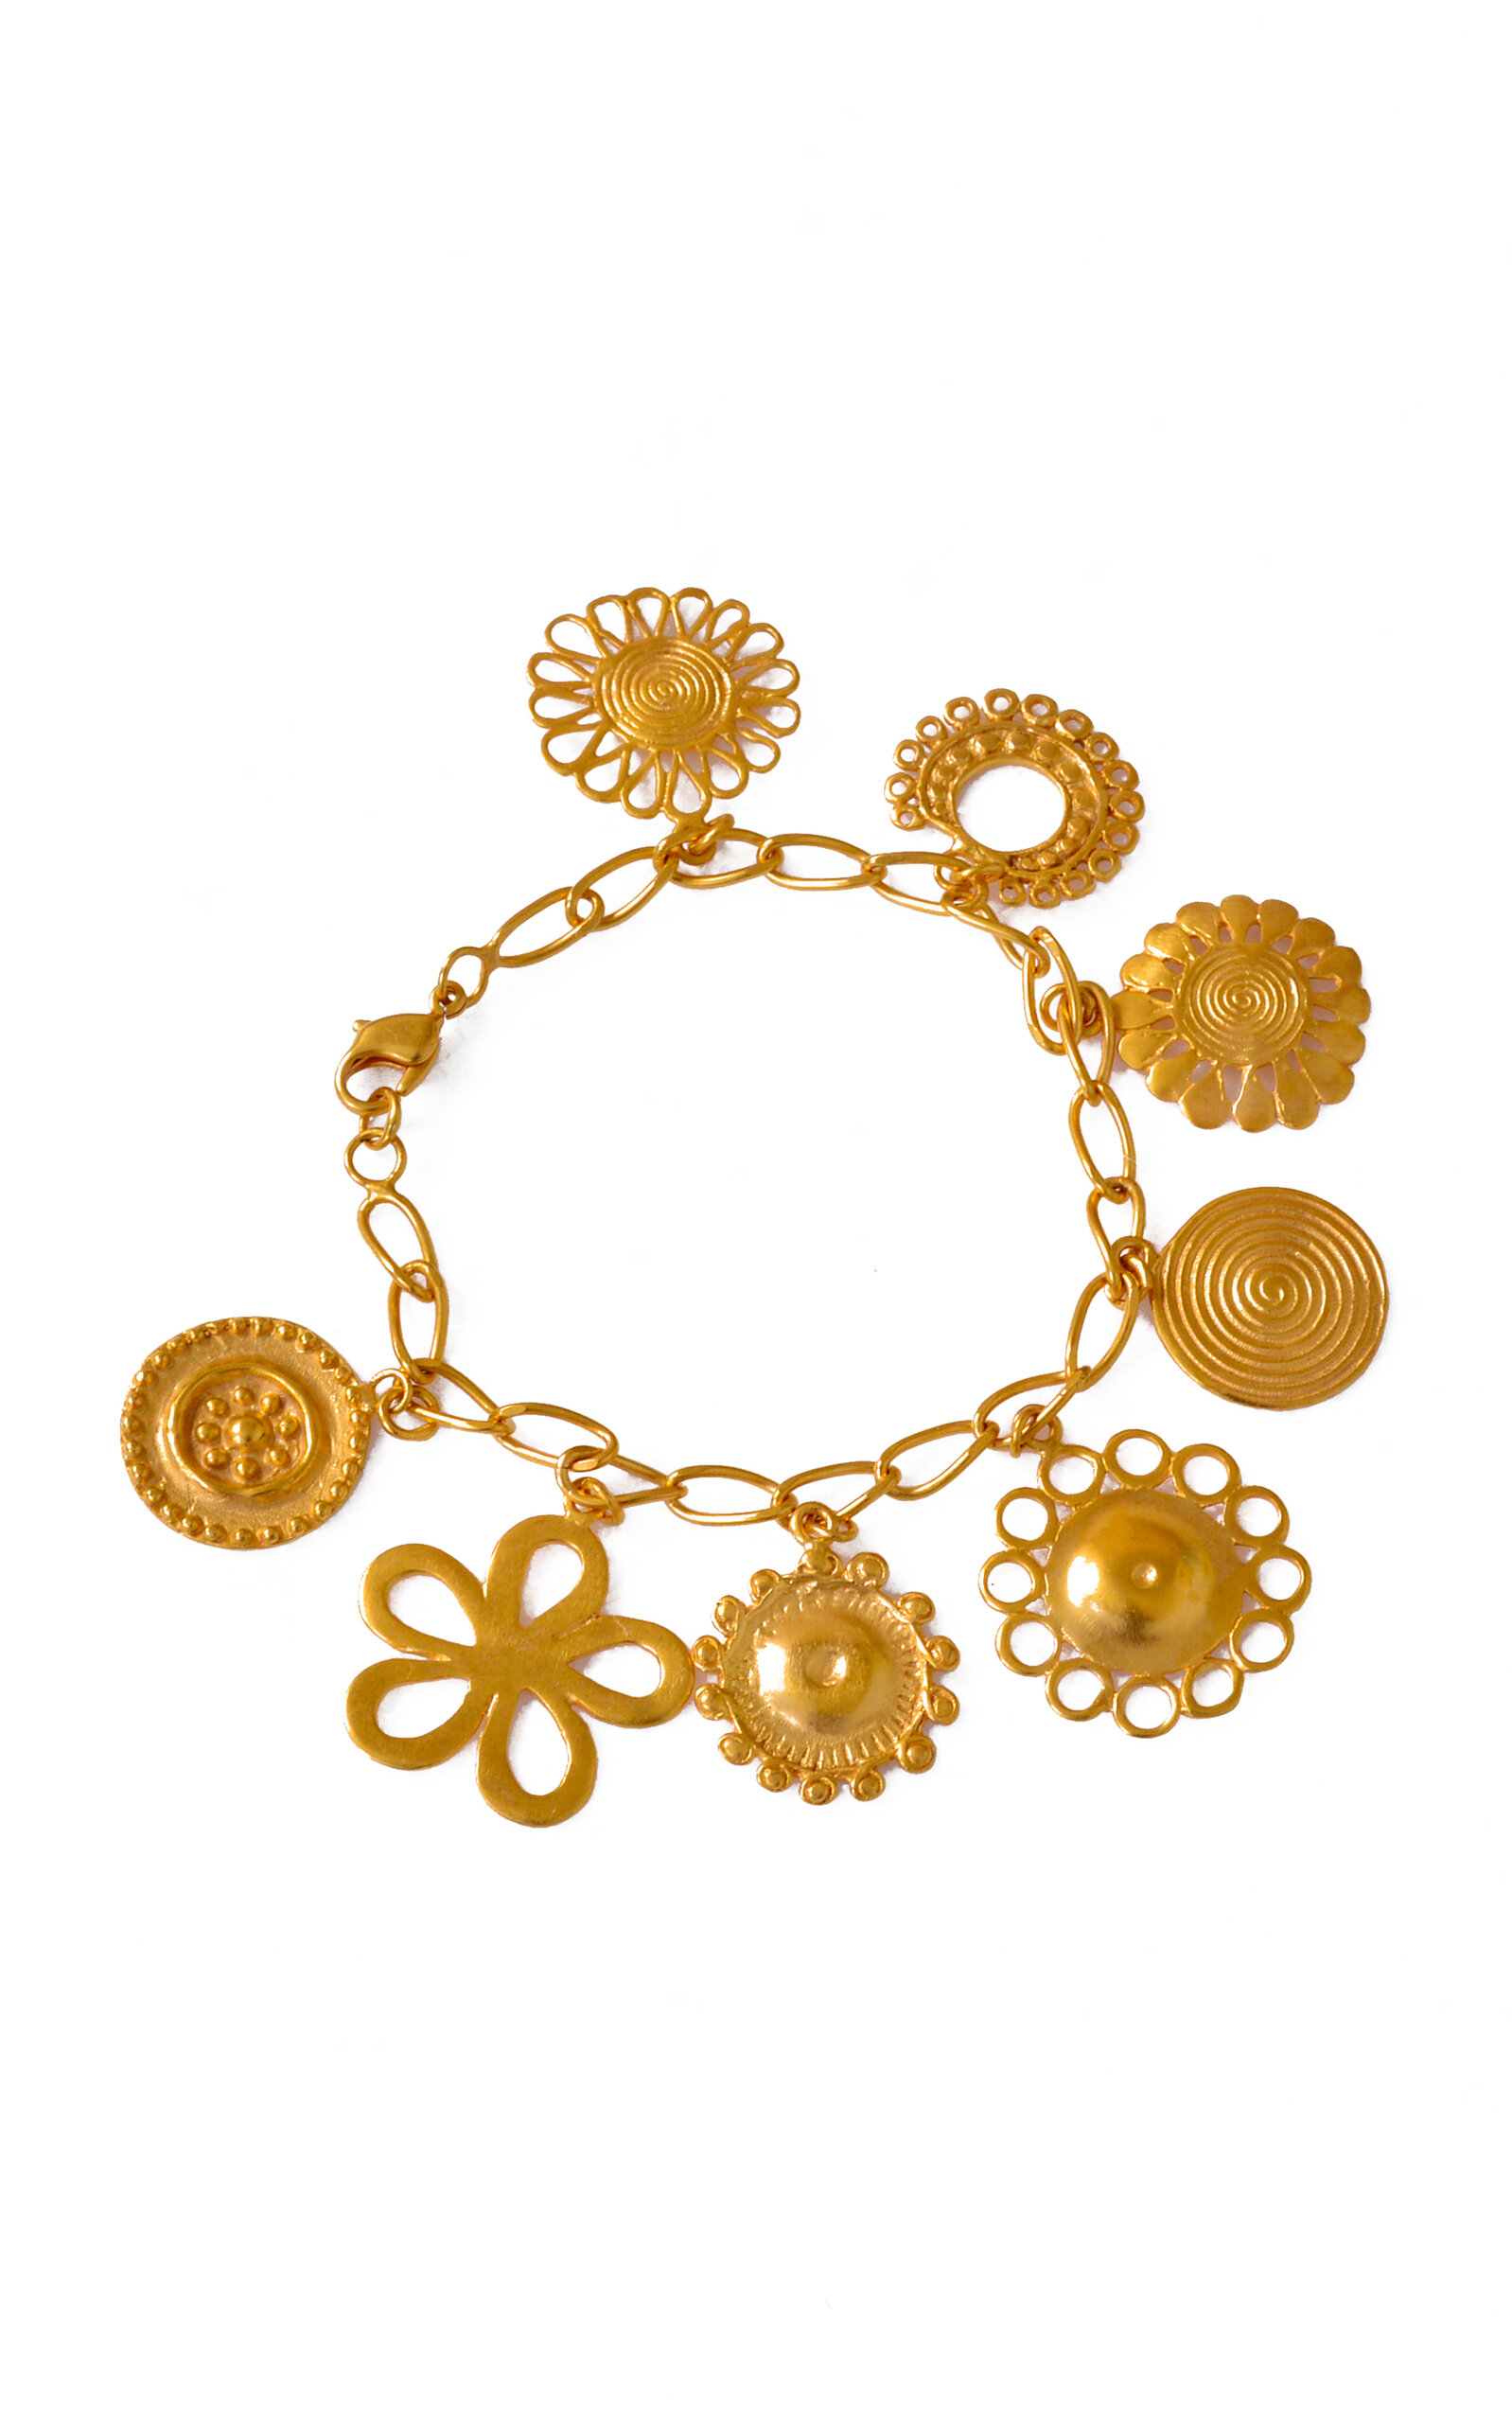 Nativos 24K Gold-Plated Bracelet